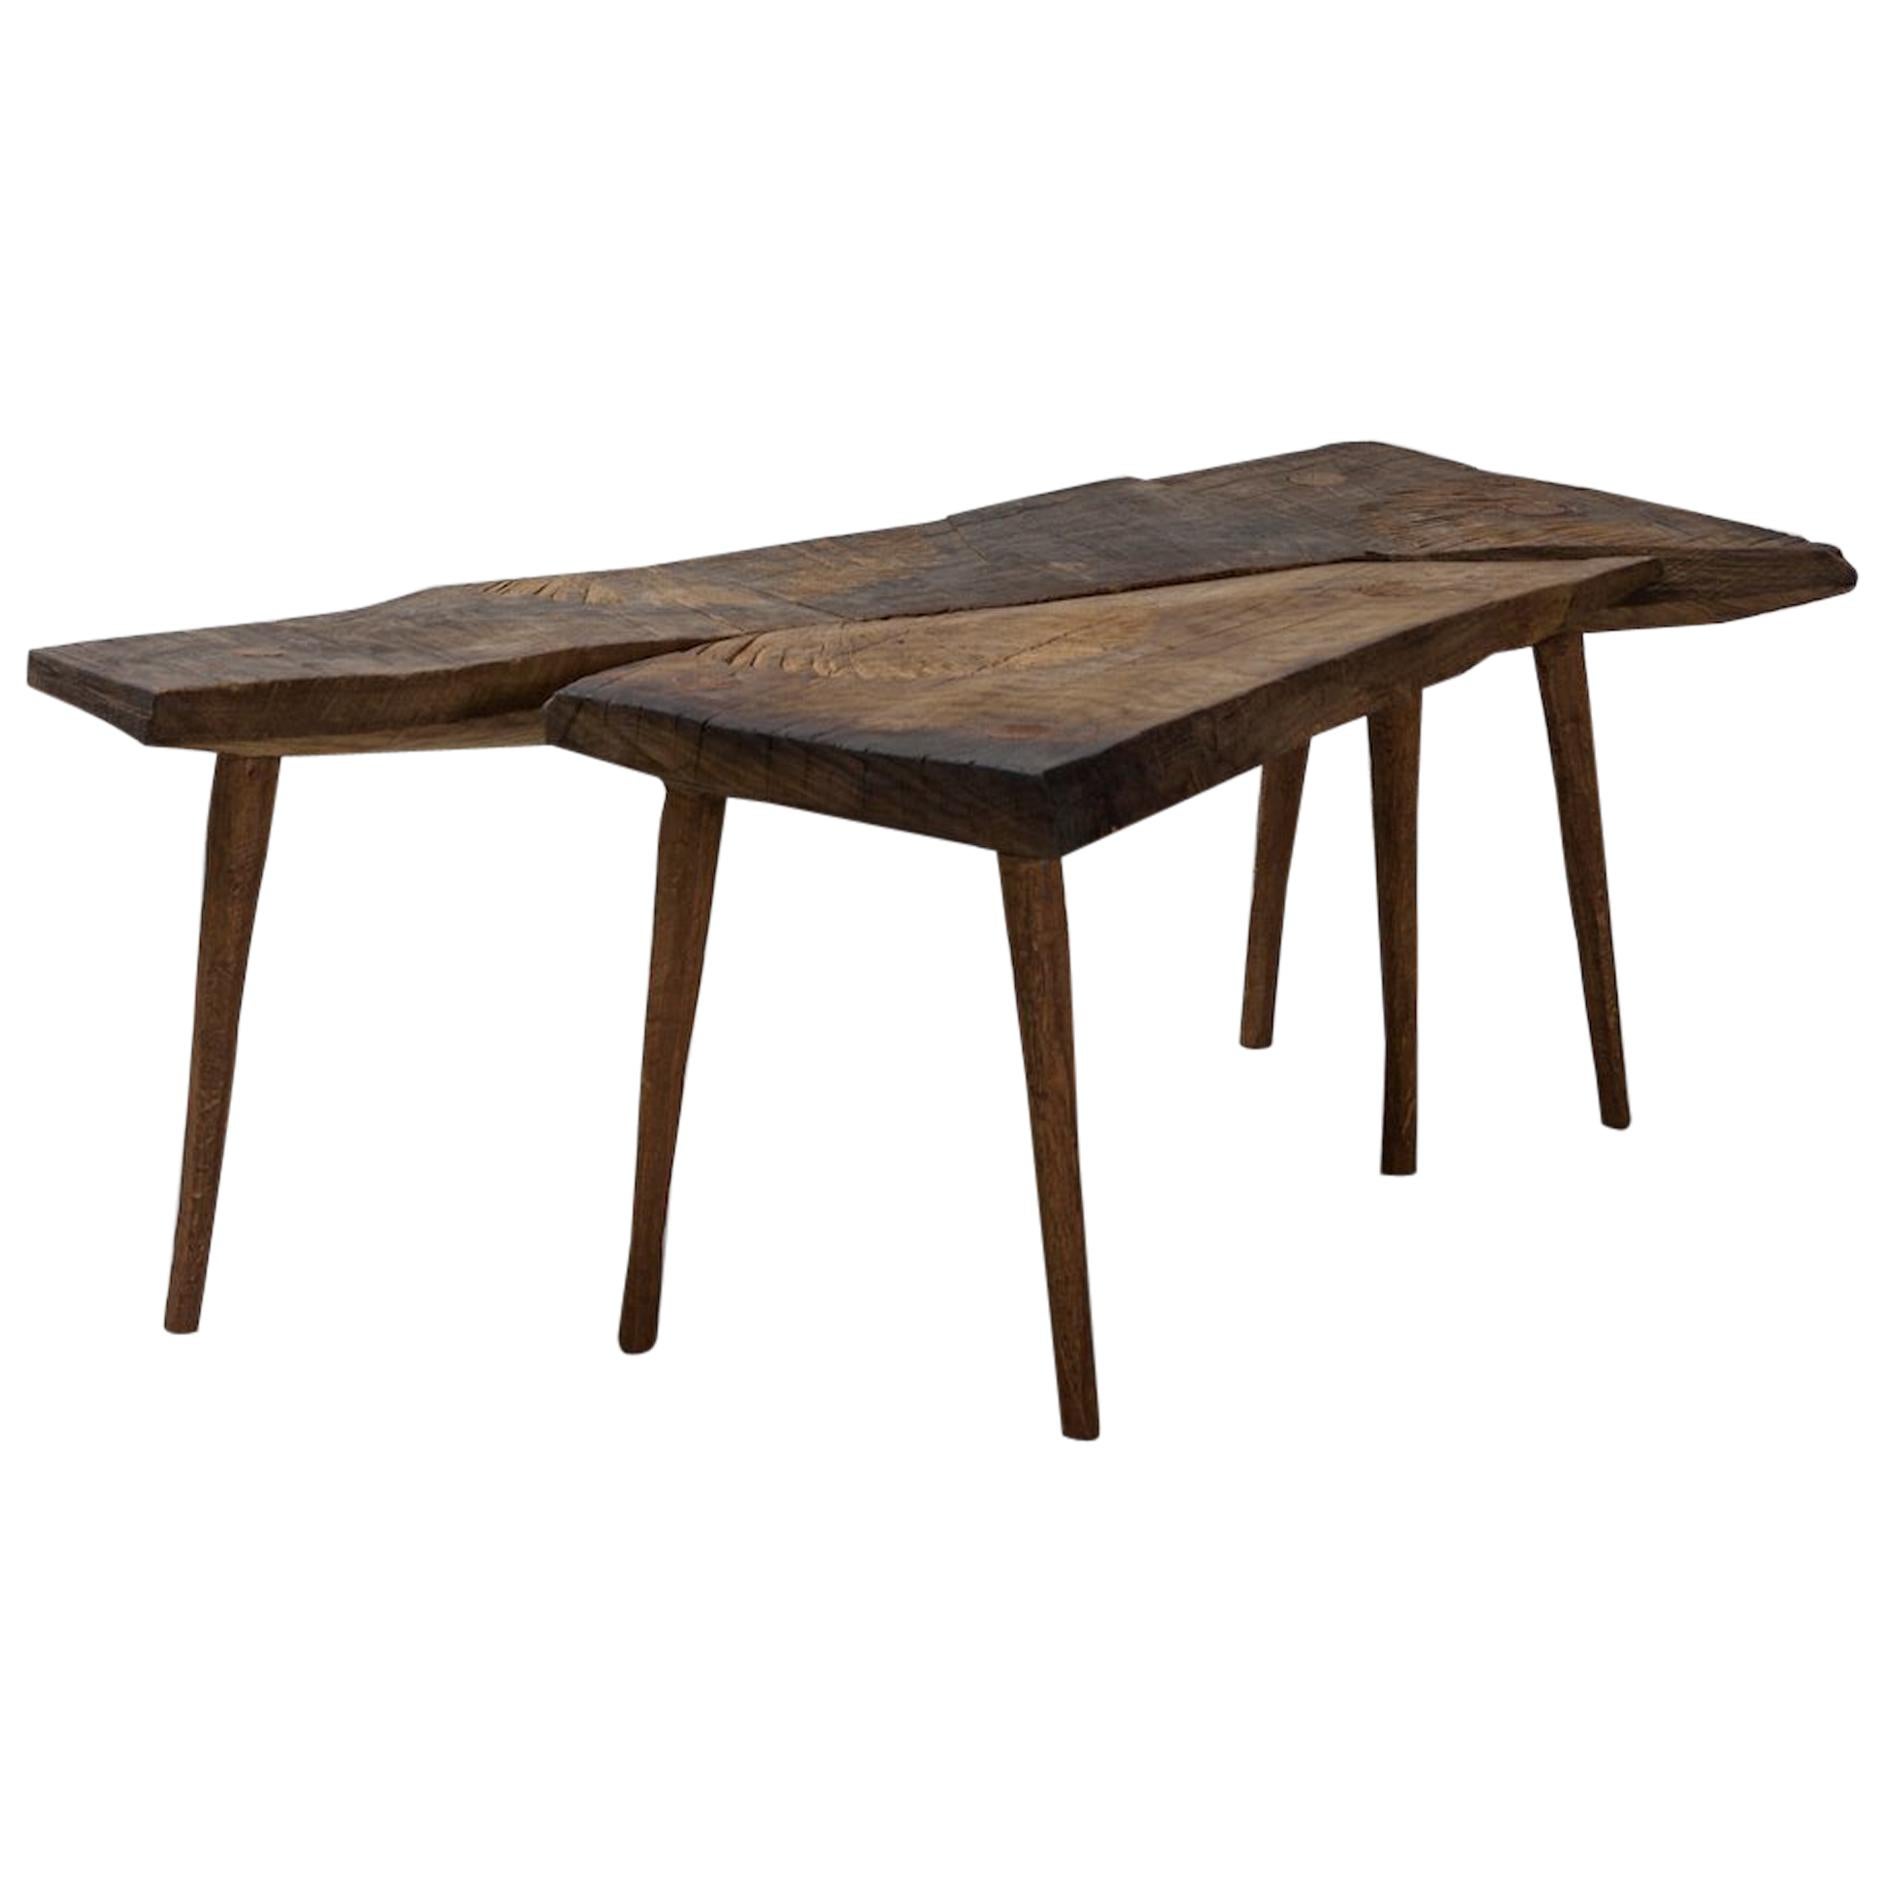 Contemporary Brutalist Style Small Table #2 in massiver Eiche und Leinöl